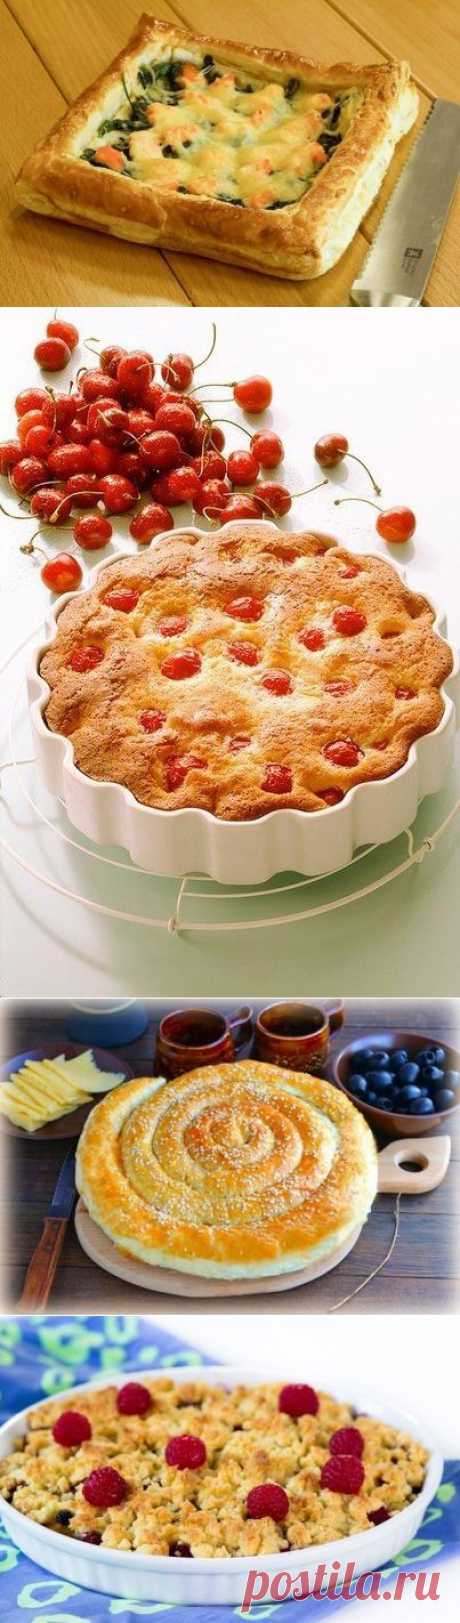 Домашняя выпечка: 10 простых пирогов